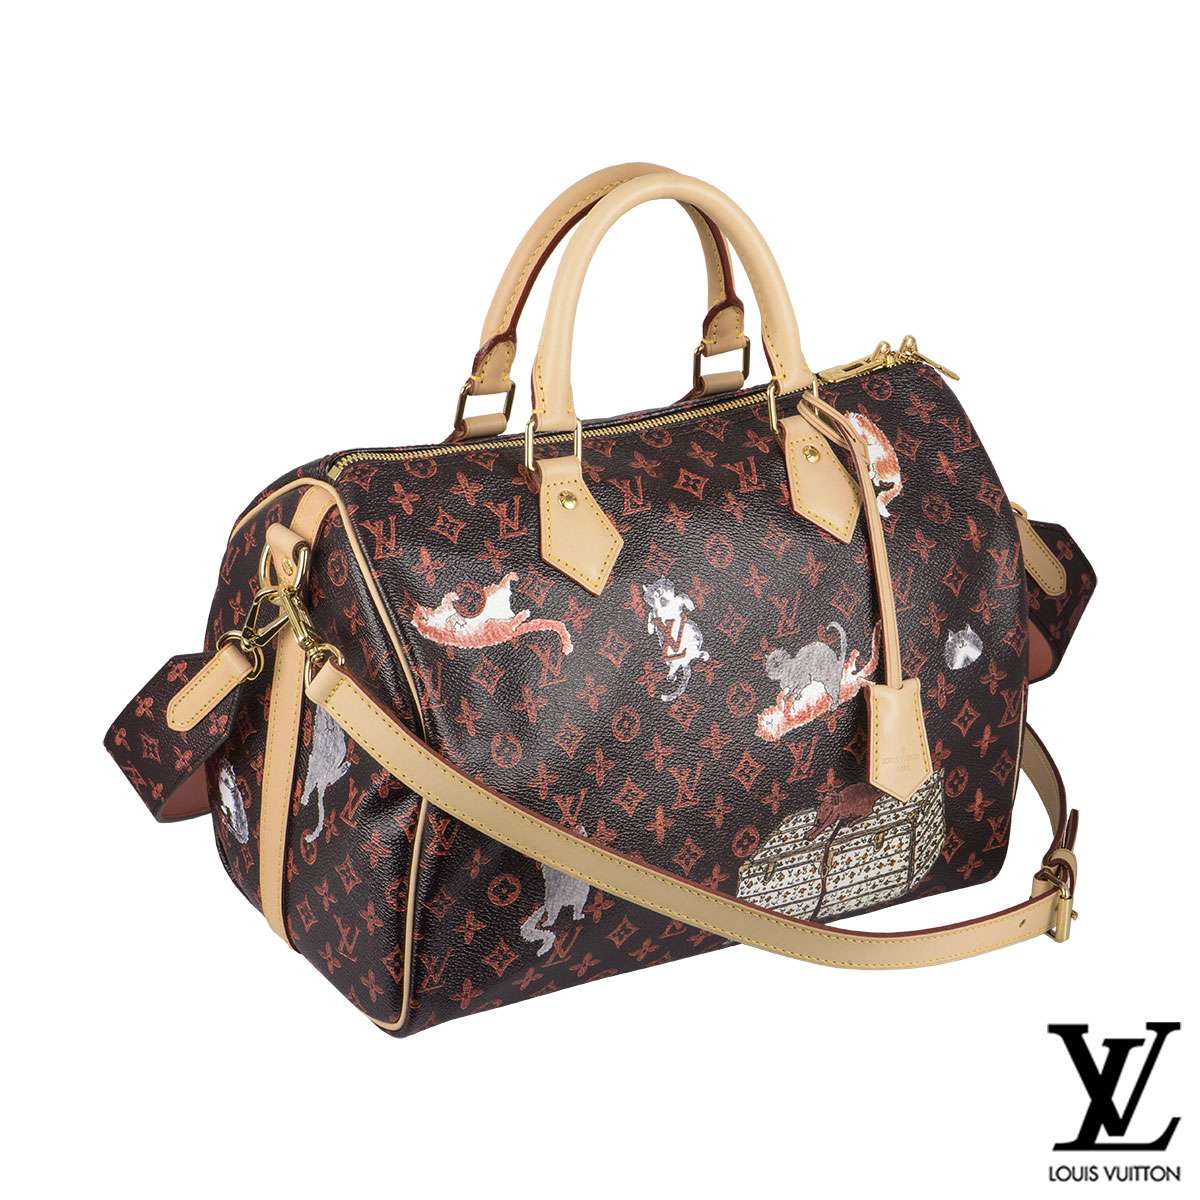 Louis Vuitton x Grace Coddington Speedy 30 Bandouliere bag | Rich Diamonds